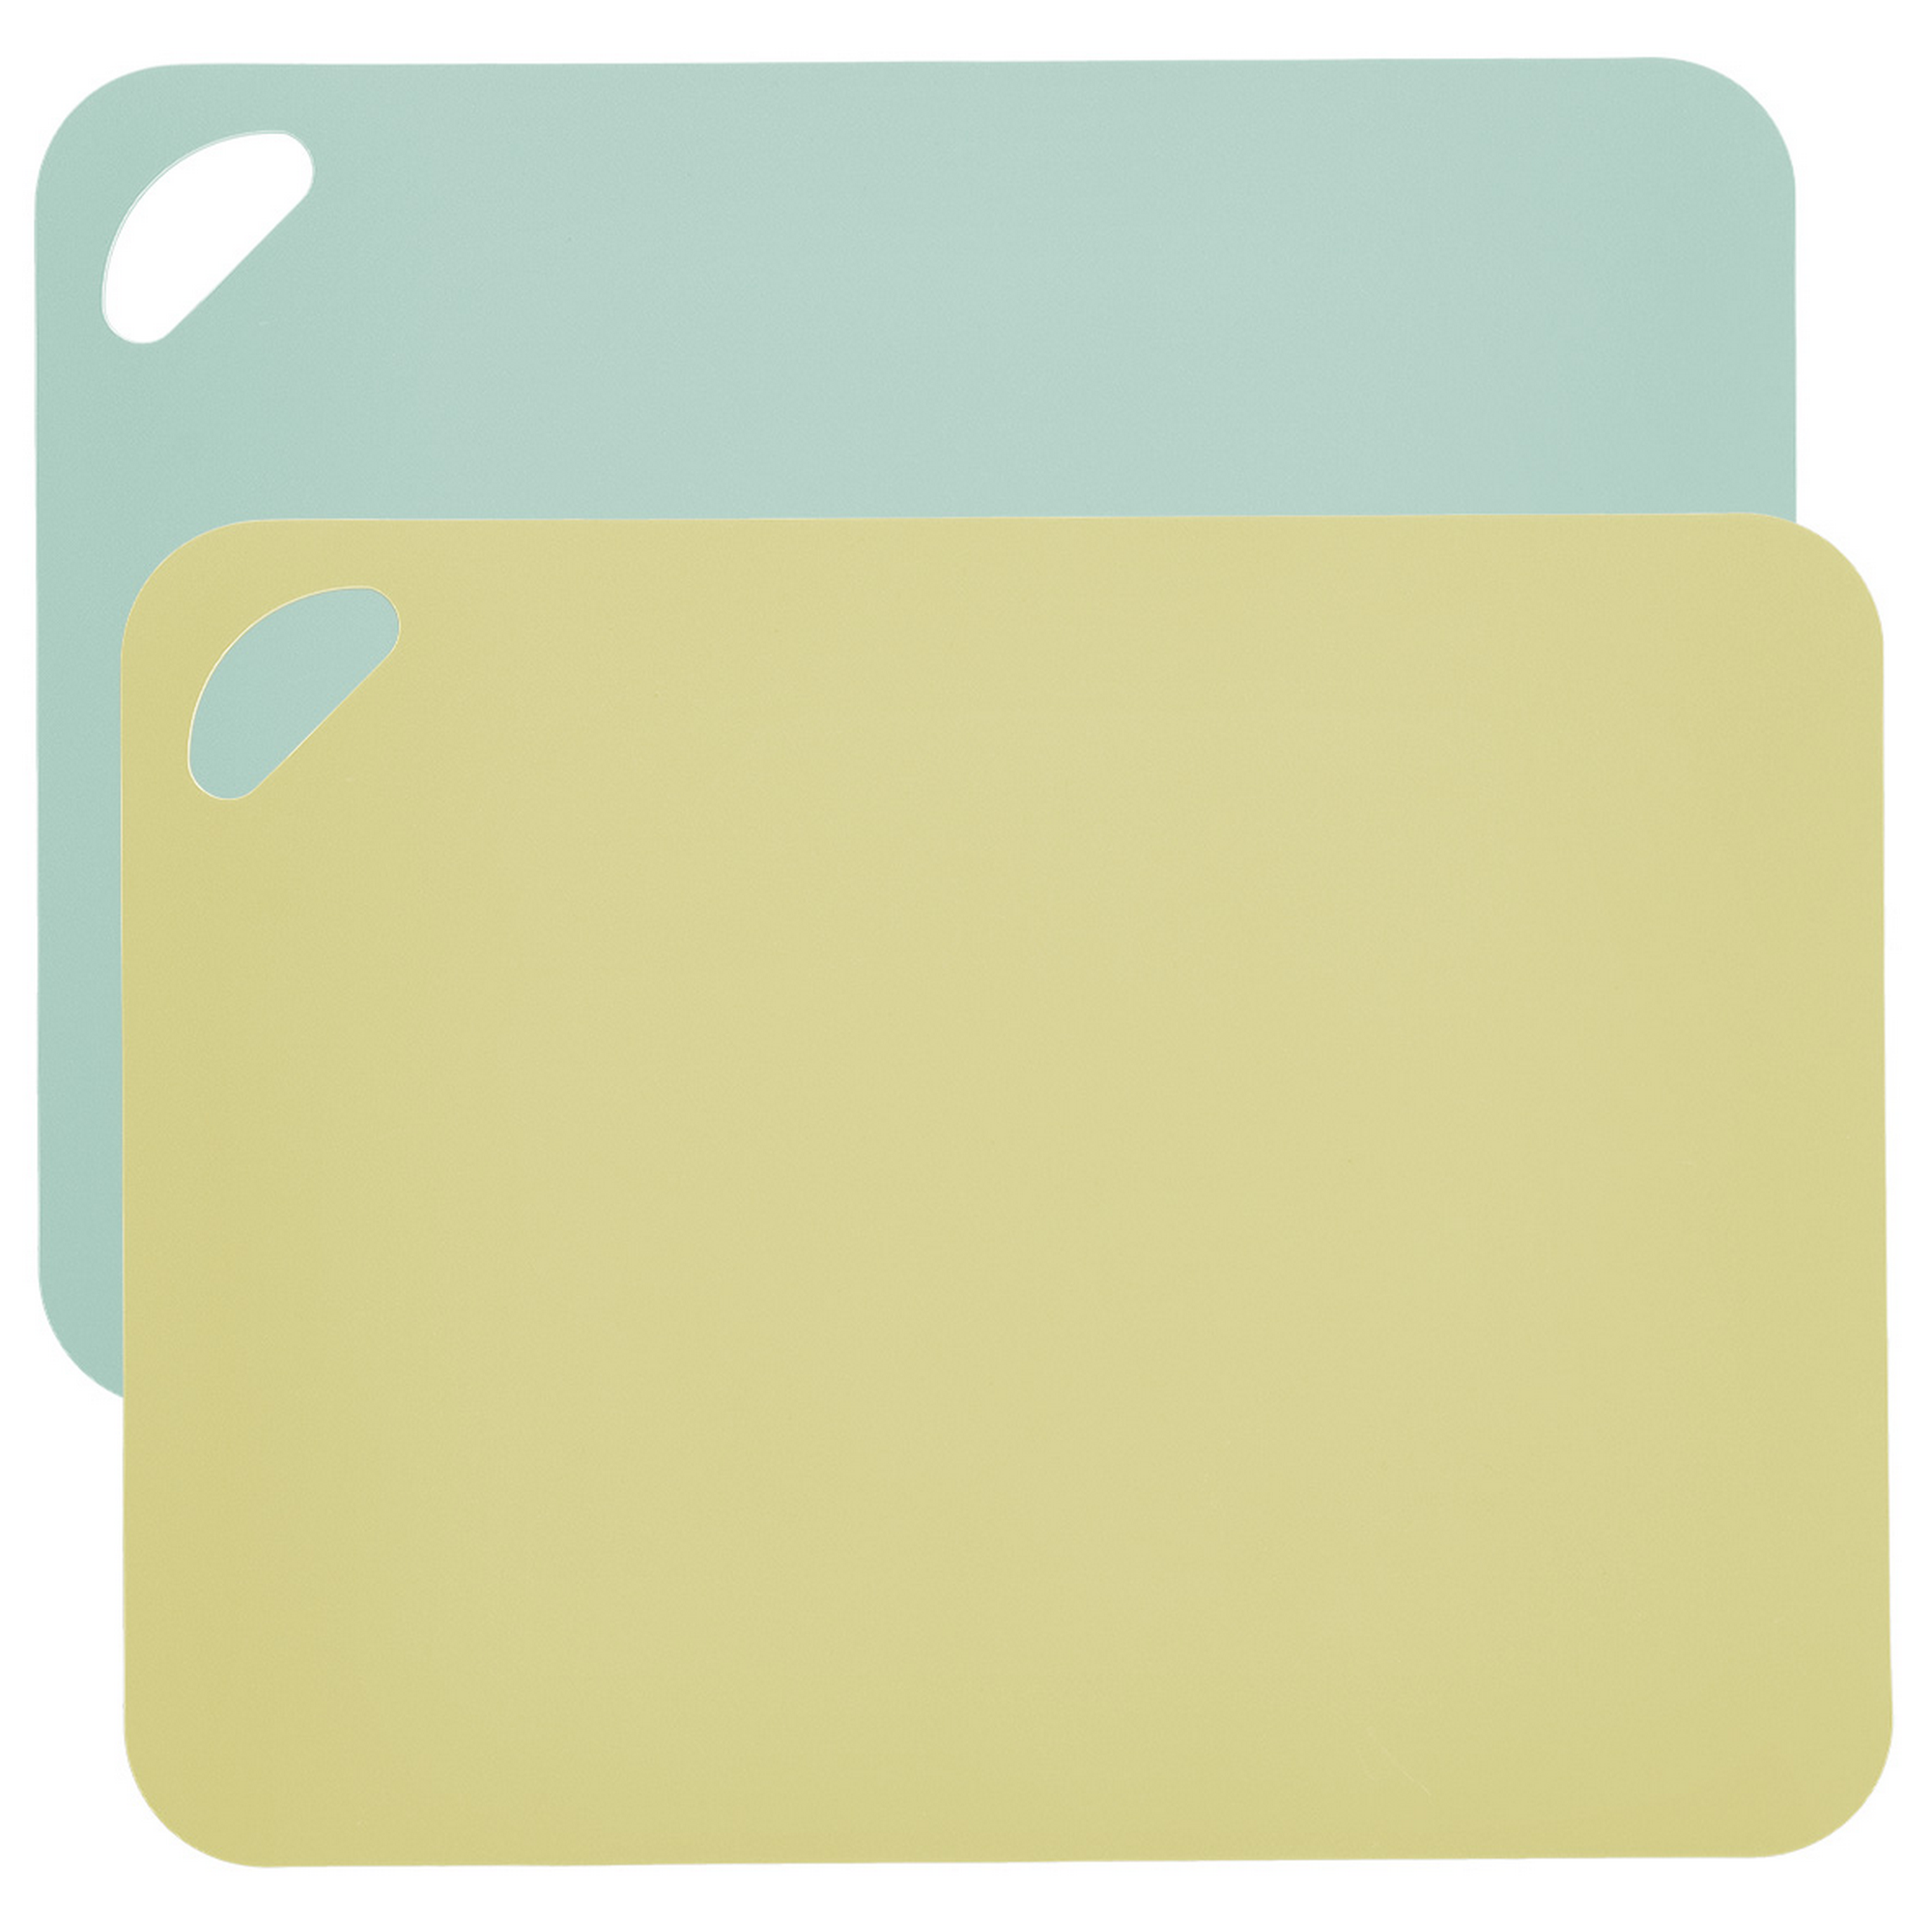 Schneidematten limonenfarben/mintfarbenfarben 38 x 0,2 x 29 cm + product picture